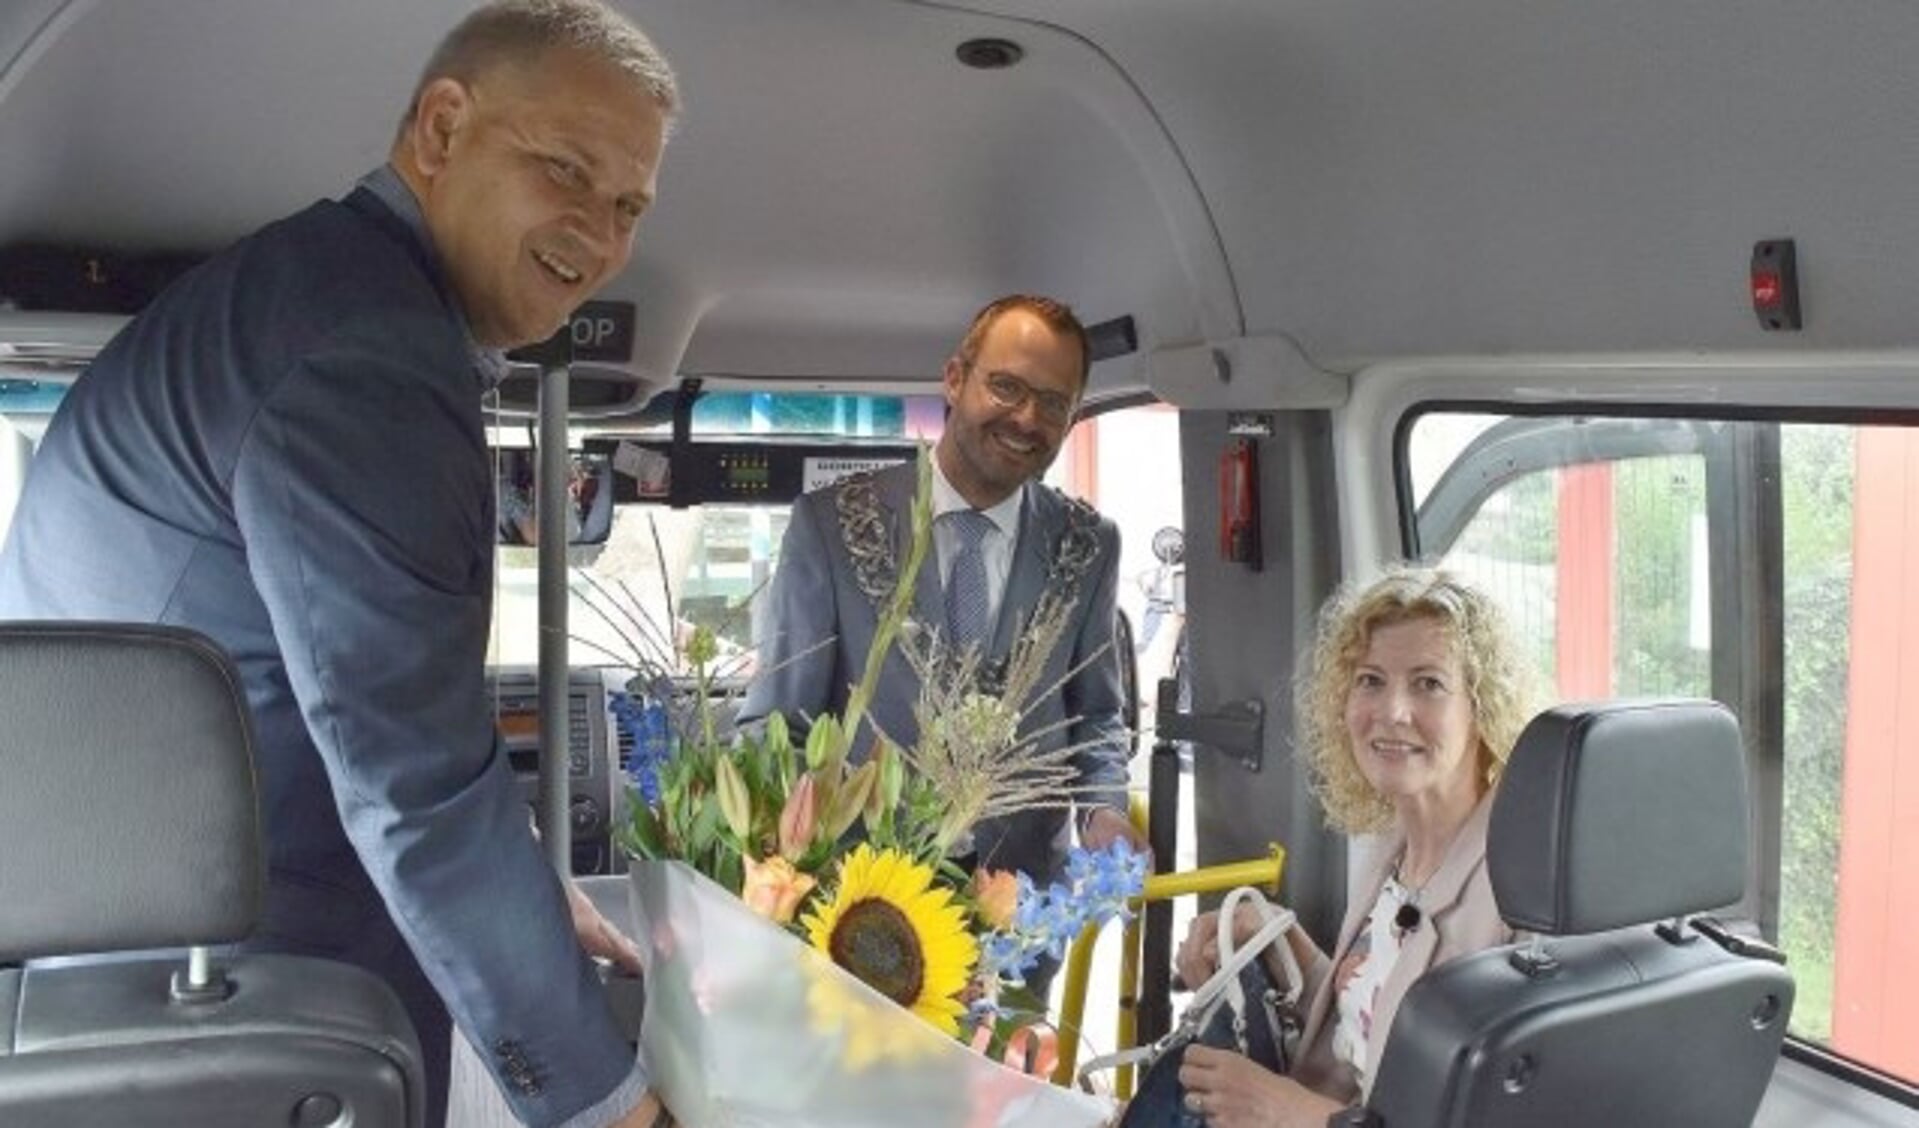 Mevrouw Schoone, die nietsvermoedend de buurtbus 505 nam richting IJsselstein, kreeg als half miljoenste reiziger een bijzonder escorte en bloemen van voorzitter Van de Veen. (Foto: Buurtbusvereniging)